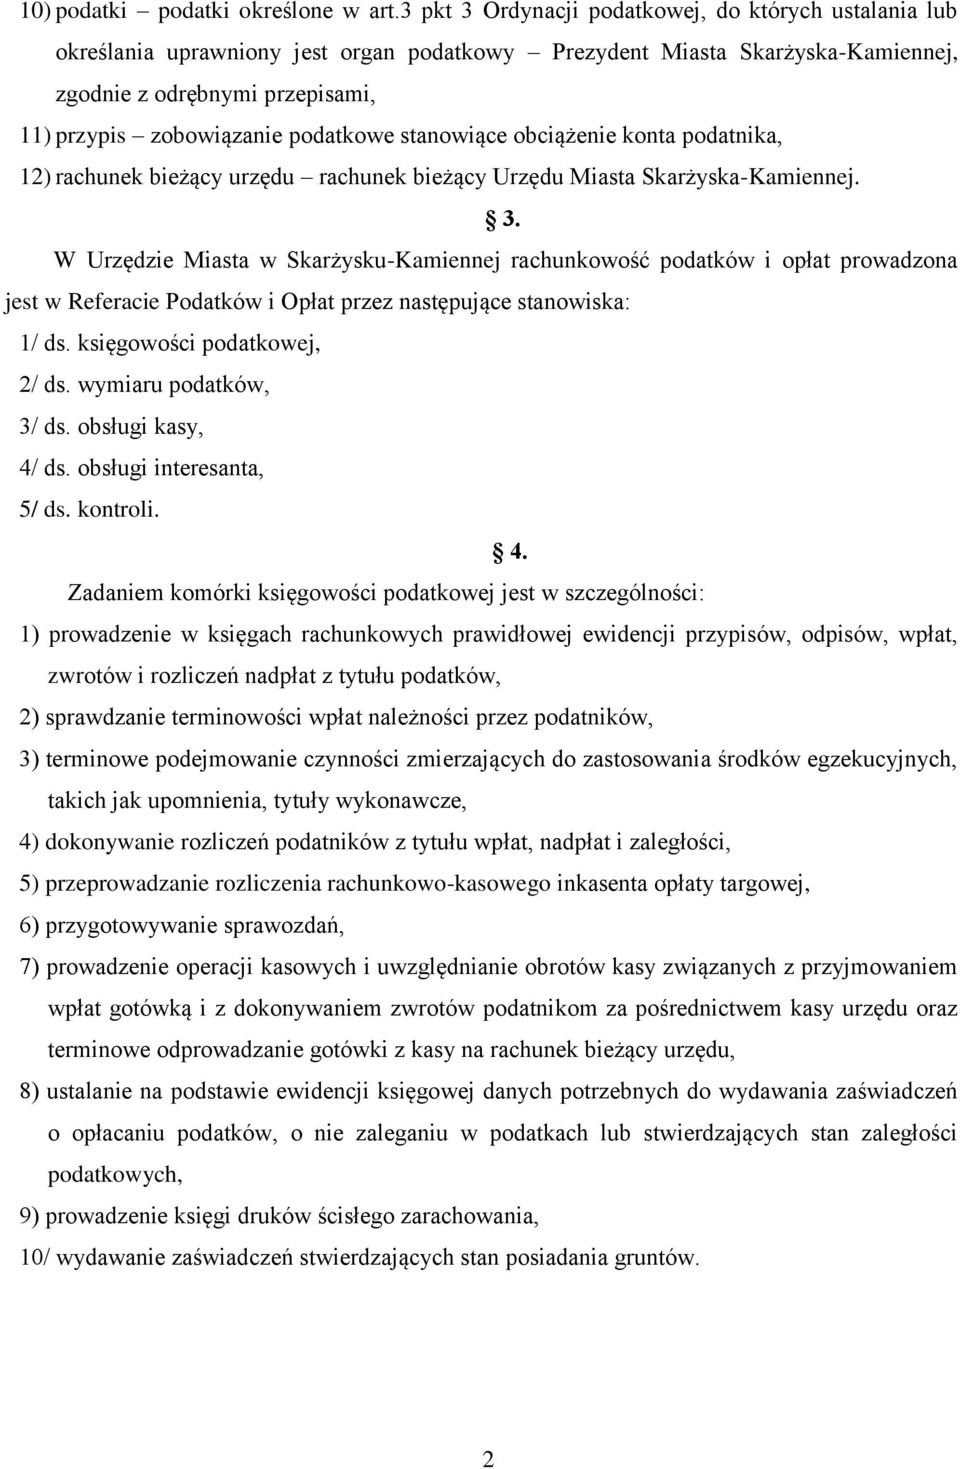 podatkowe stanowiące obciążenie konta podatnika, 12) rachunek bieżący urzędu rachunek bieżący Urzędu Miasta Skarżyska-Kamiennej. 3.